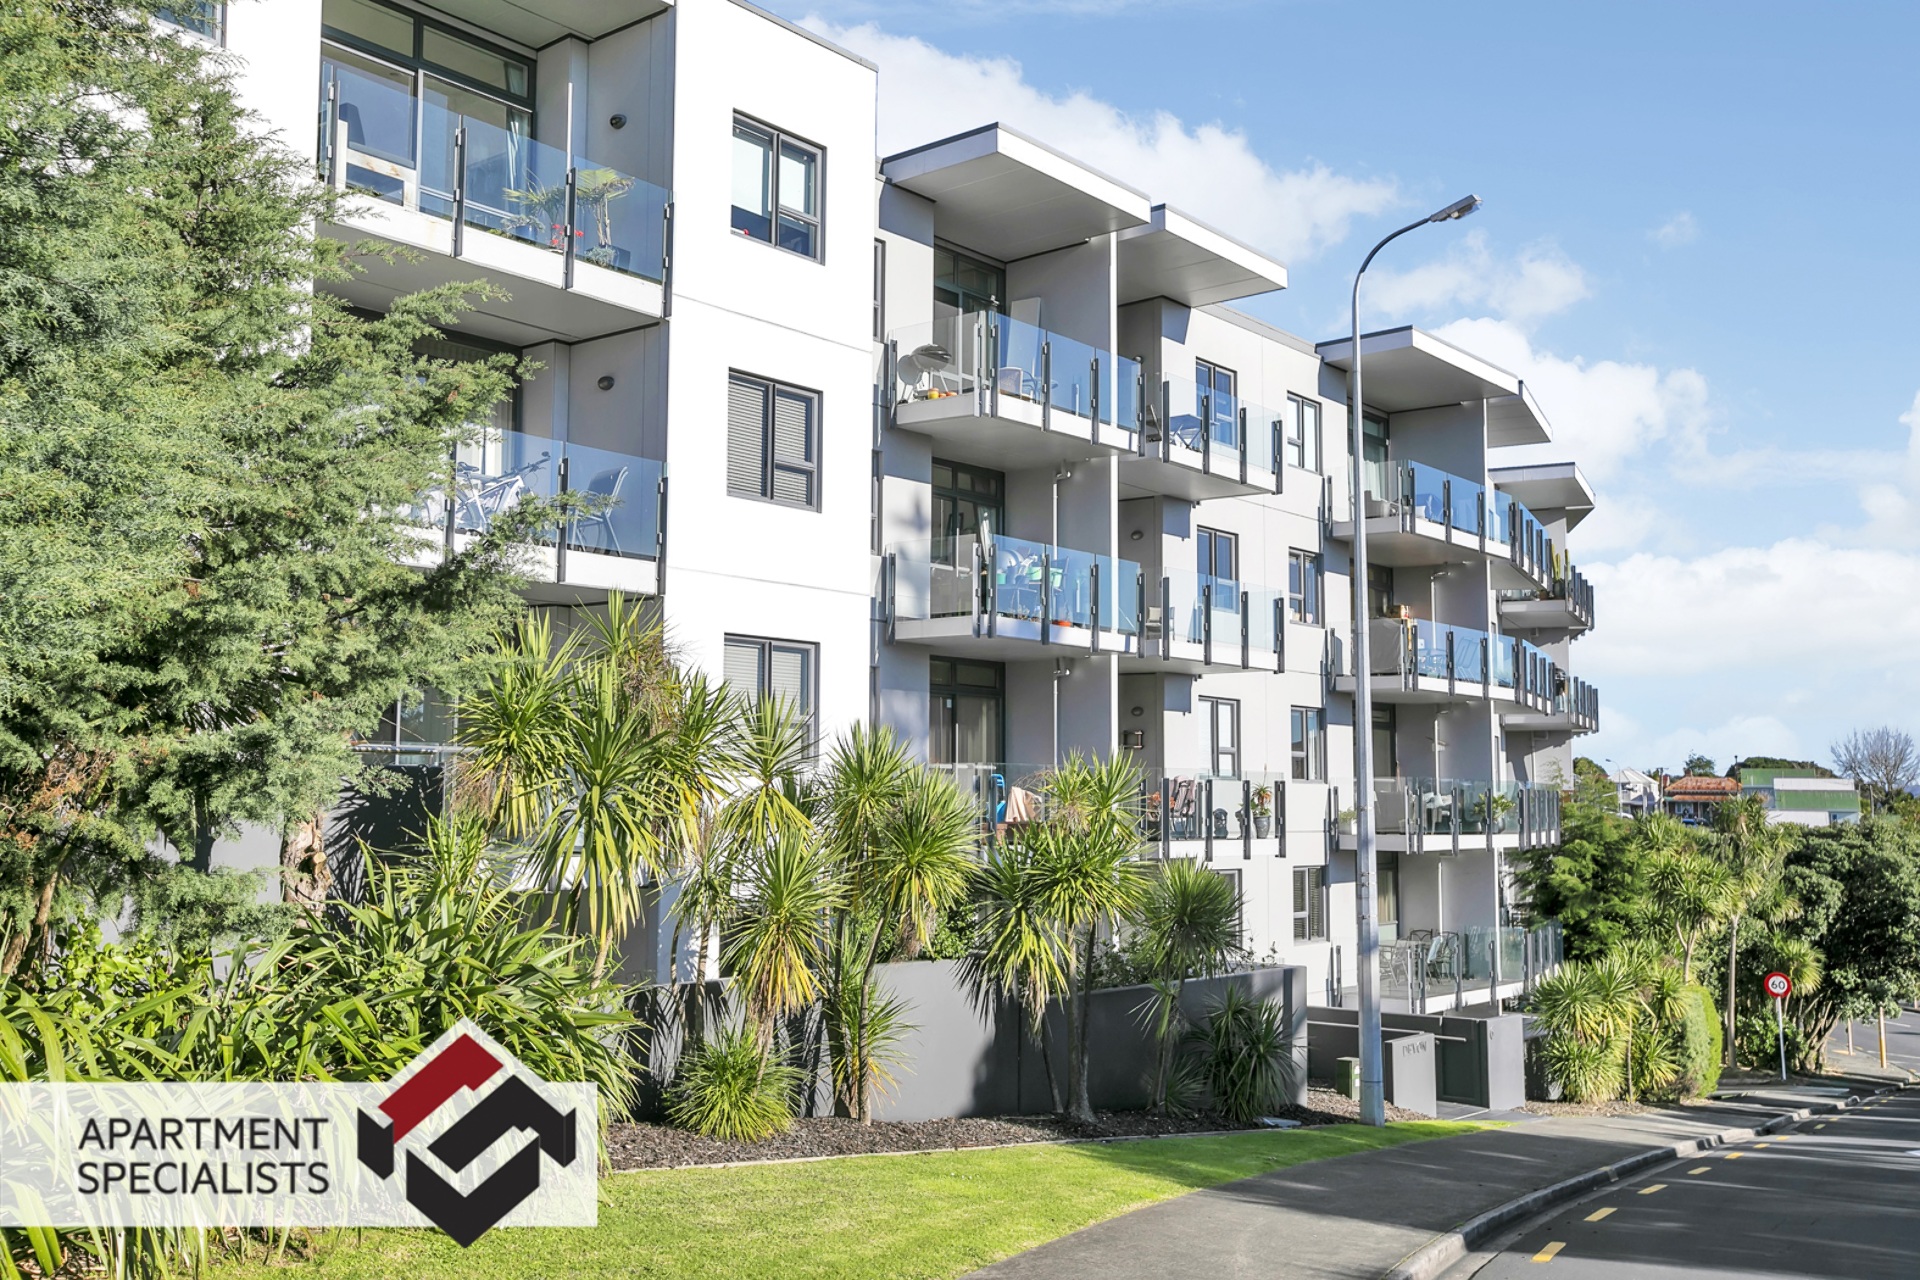 14 | 6 Piwakawaka Street, Eden Terrace | Apartment Specialists